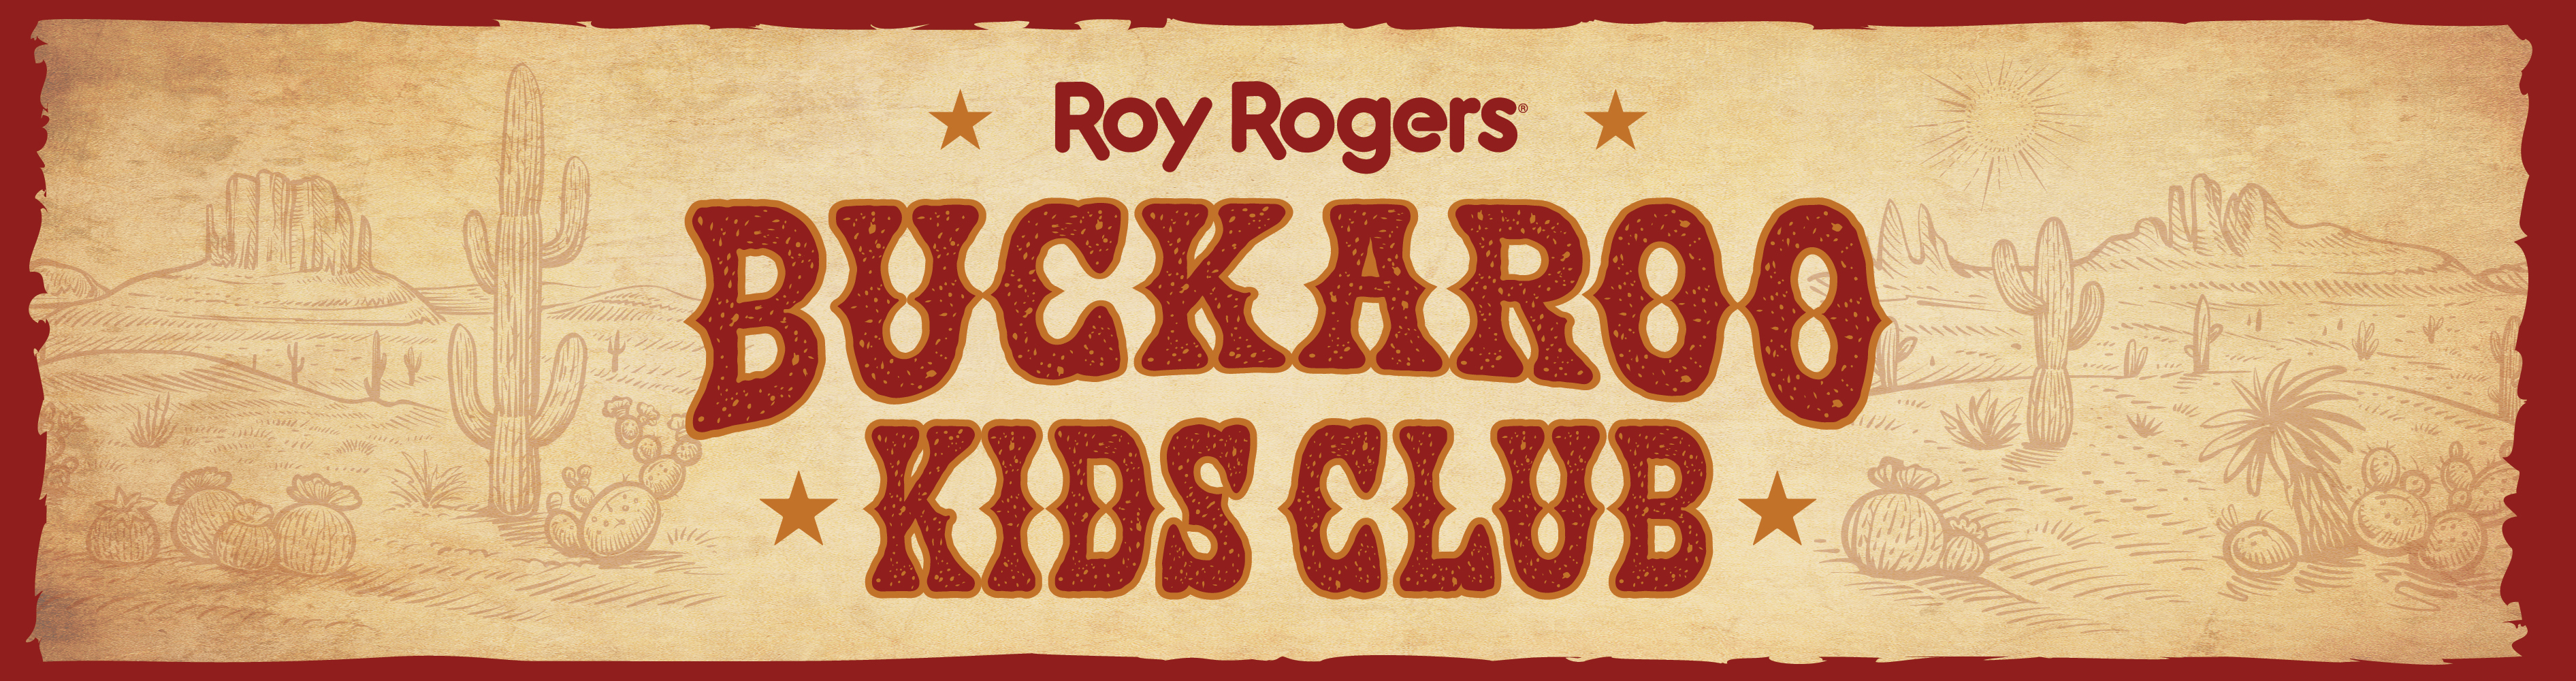 Buckaroo Kids Club Header